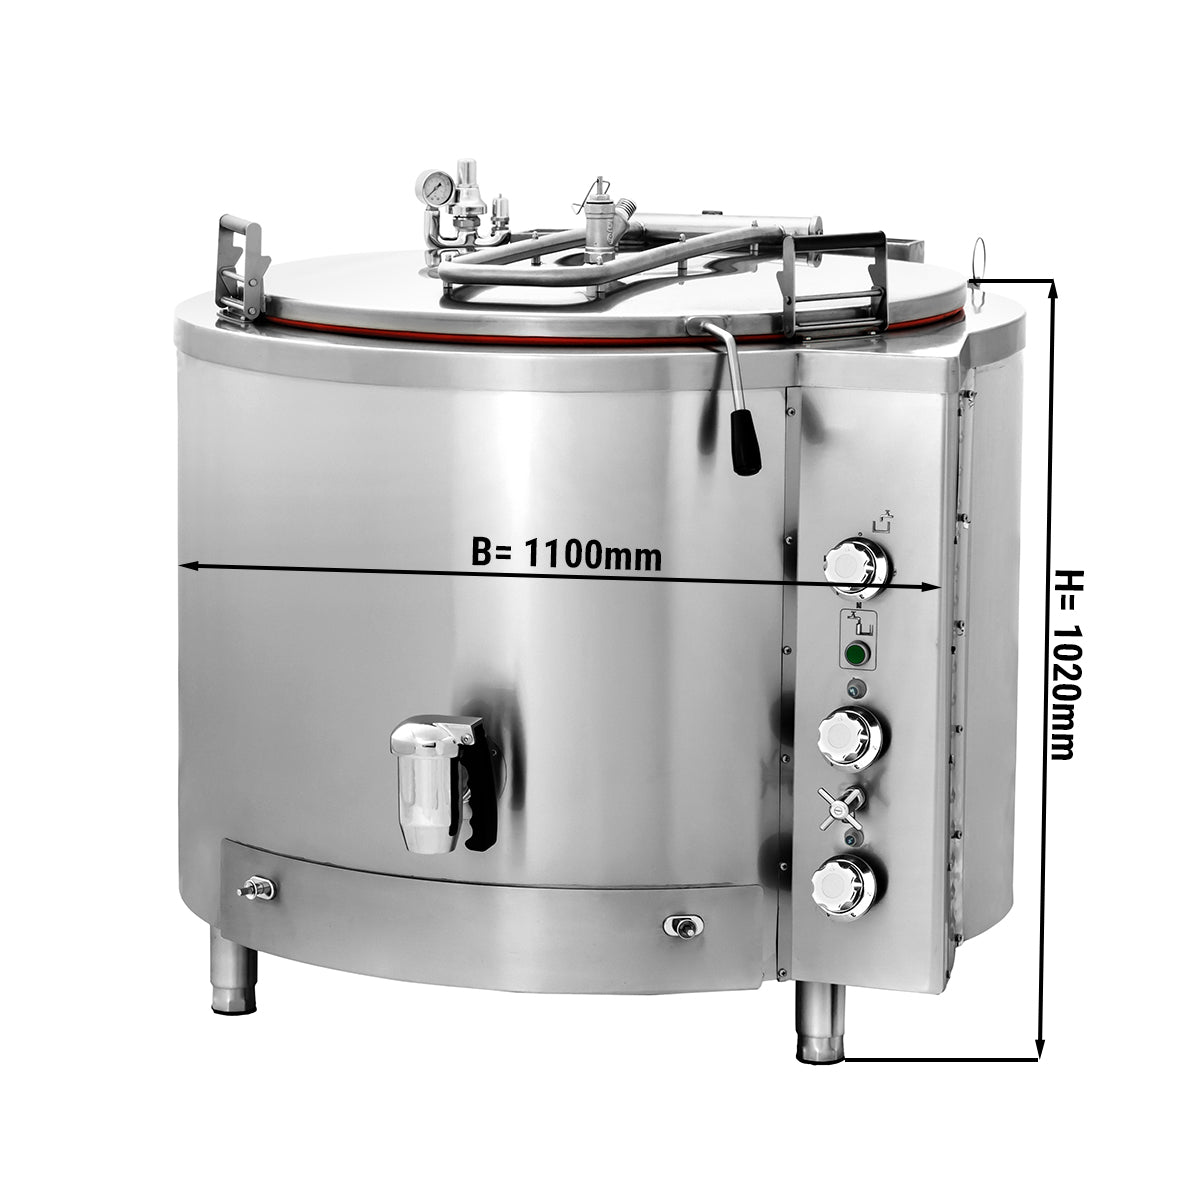 Gass kokegryte - 400 liter - Indirekte oppvarming